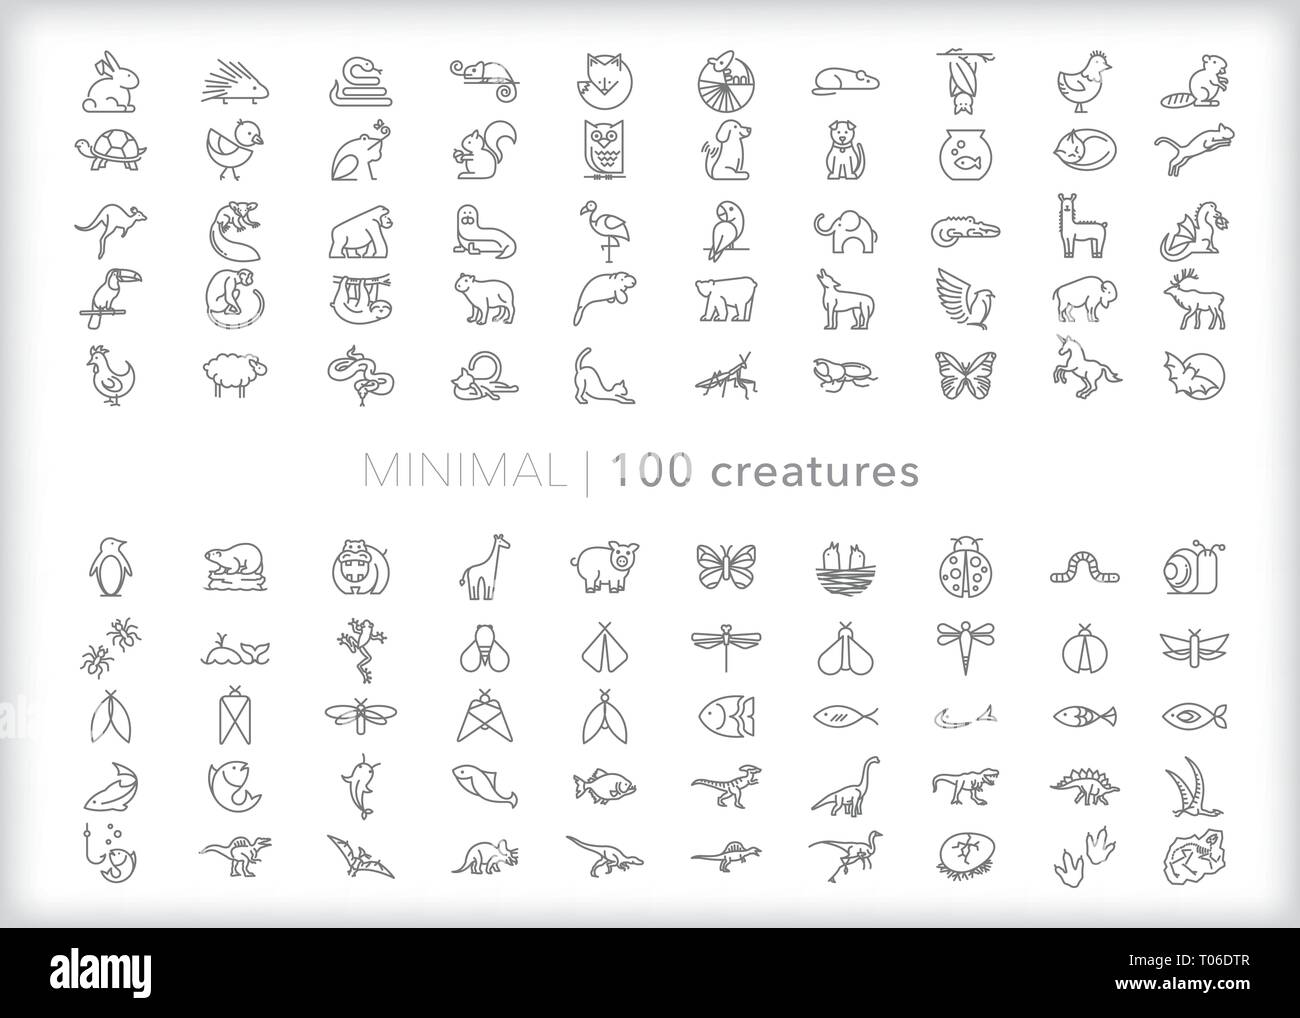 Satz von 100 Tier Zeile für Symbole der Haustiere, Zoo, Tiere, Nutztiere, Safari Tiere, Fische, Reptilien, Säugetiere, Dinosaurier, Insekten, Käfer und Critters Stock Vektor